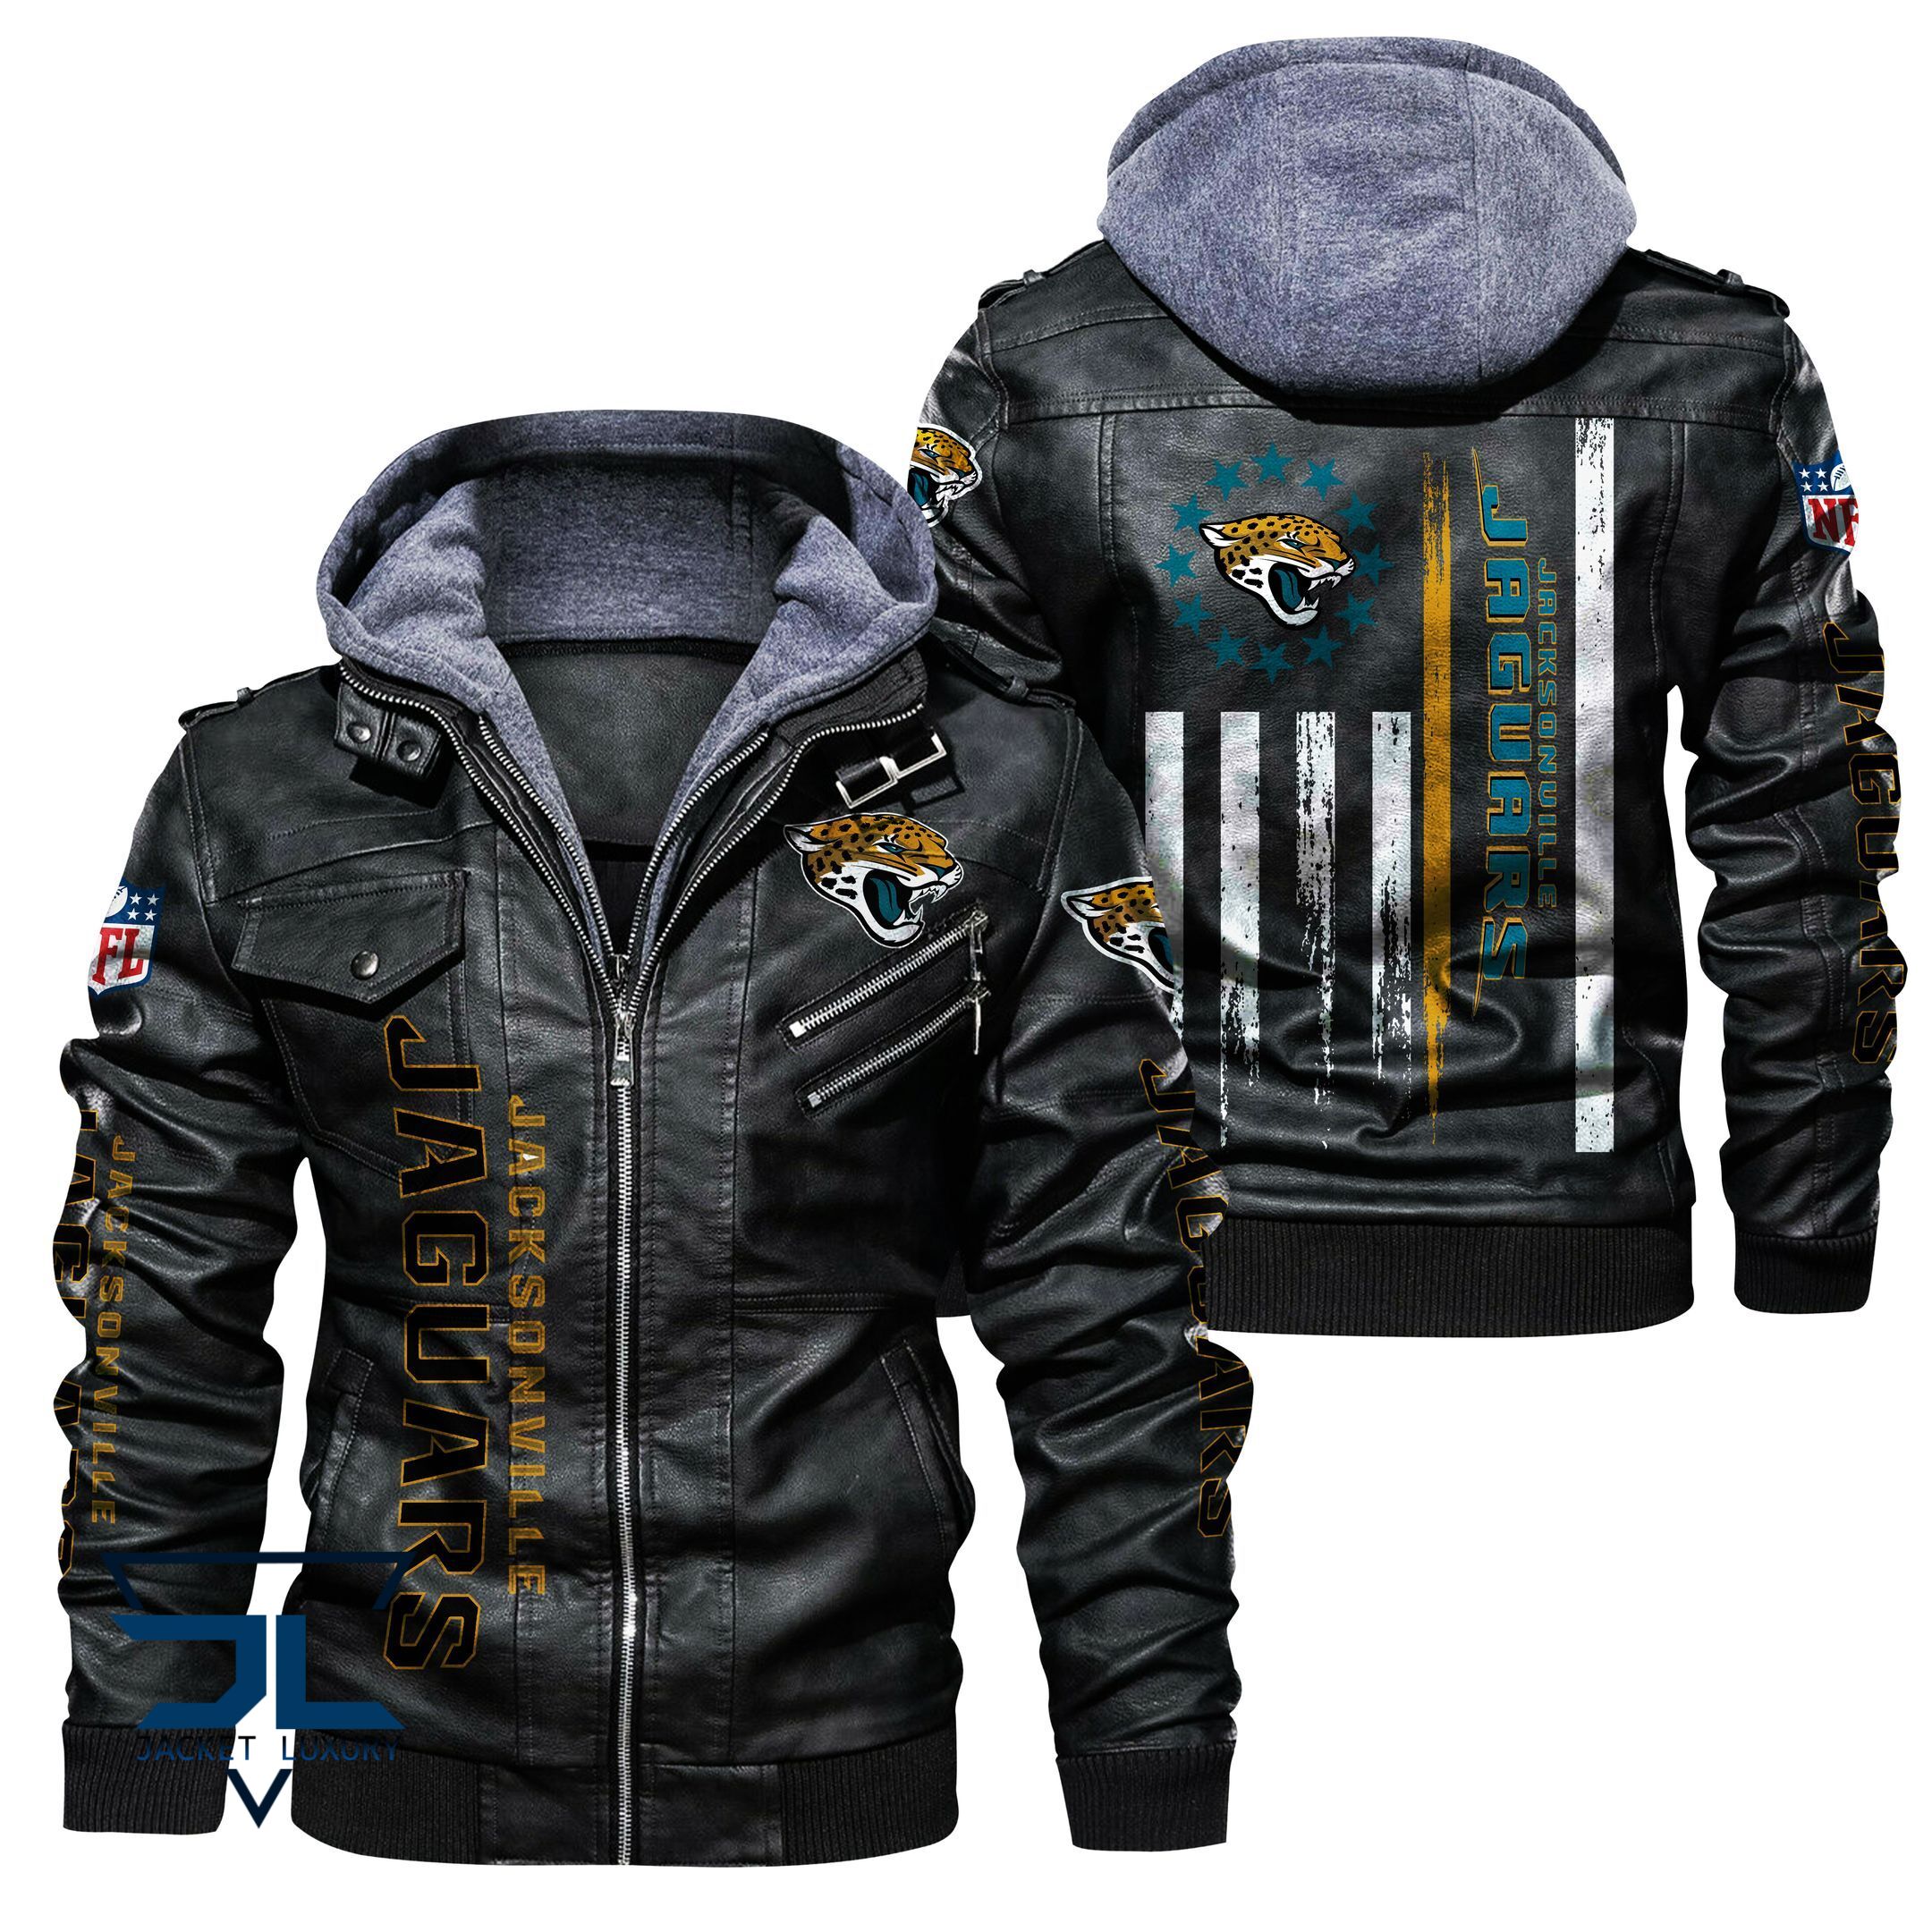 Get the best jackets under $100! 393